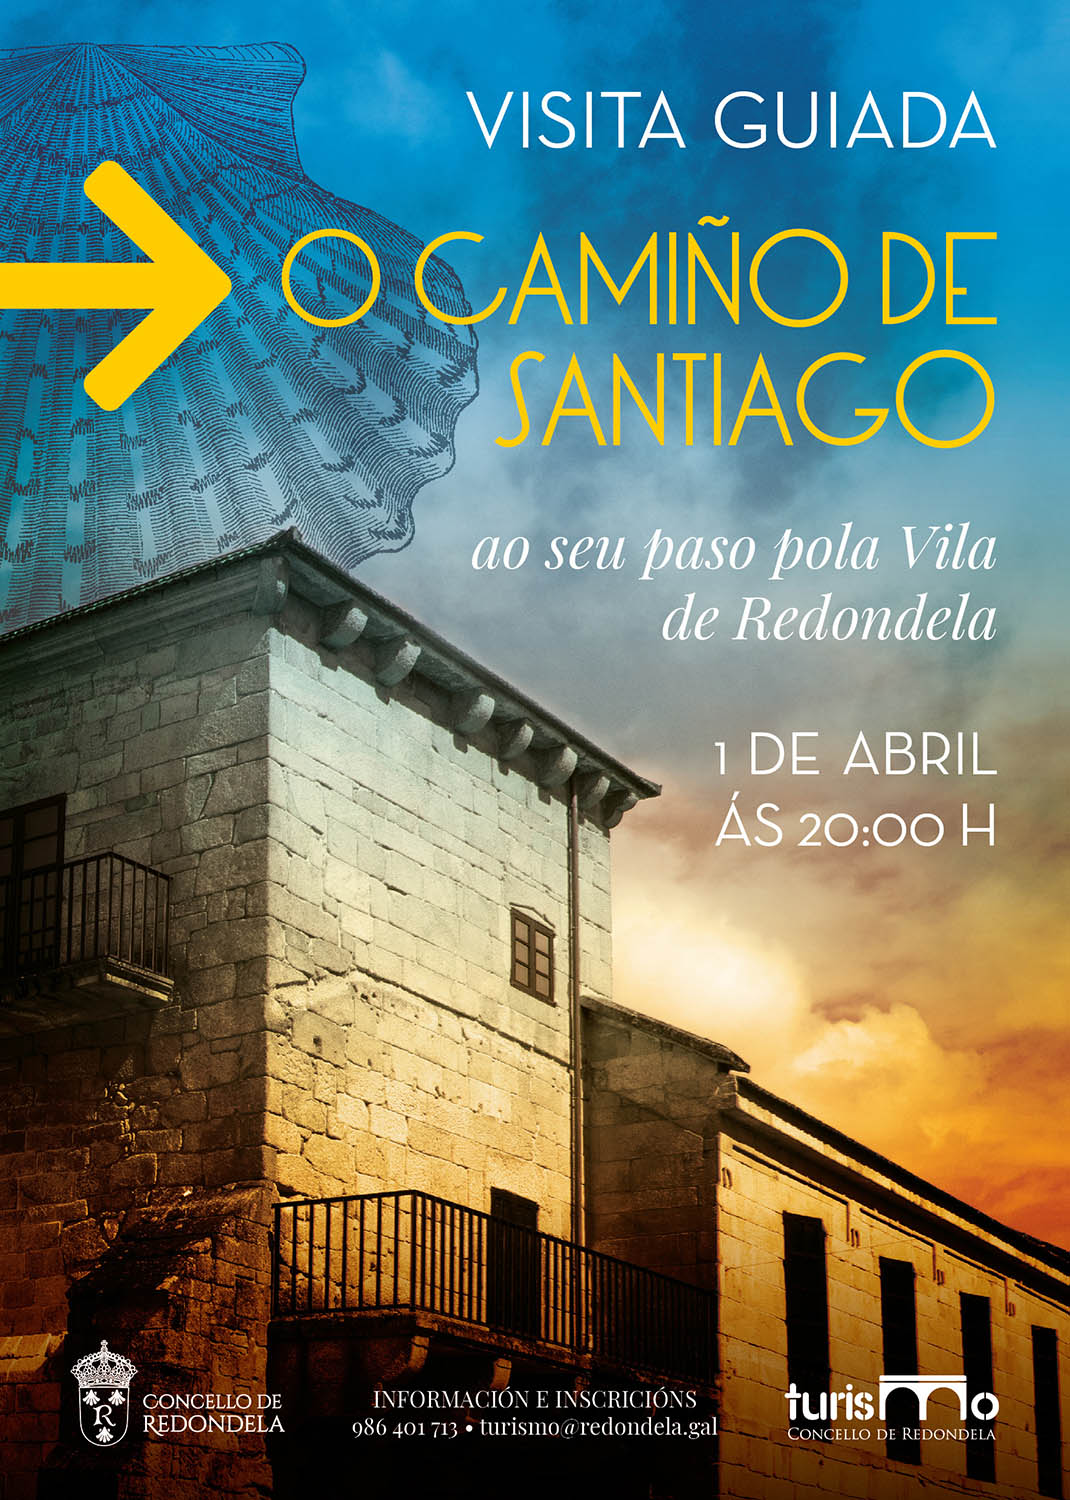 Redondela Pontevedra Diseño Publicidad Marketing Evento cartel cultura visita guiada